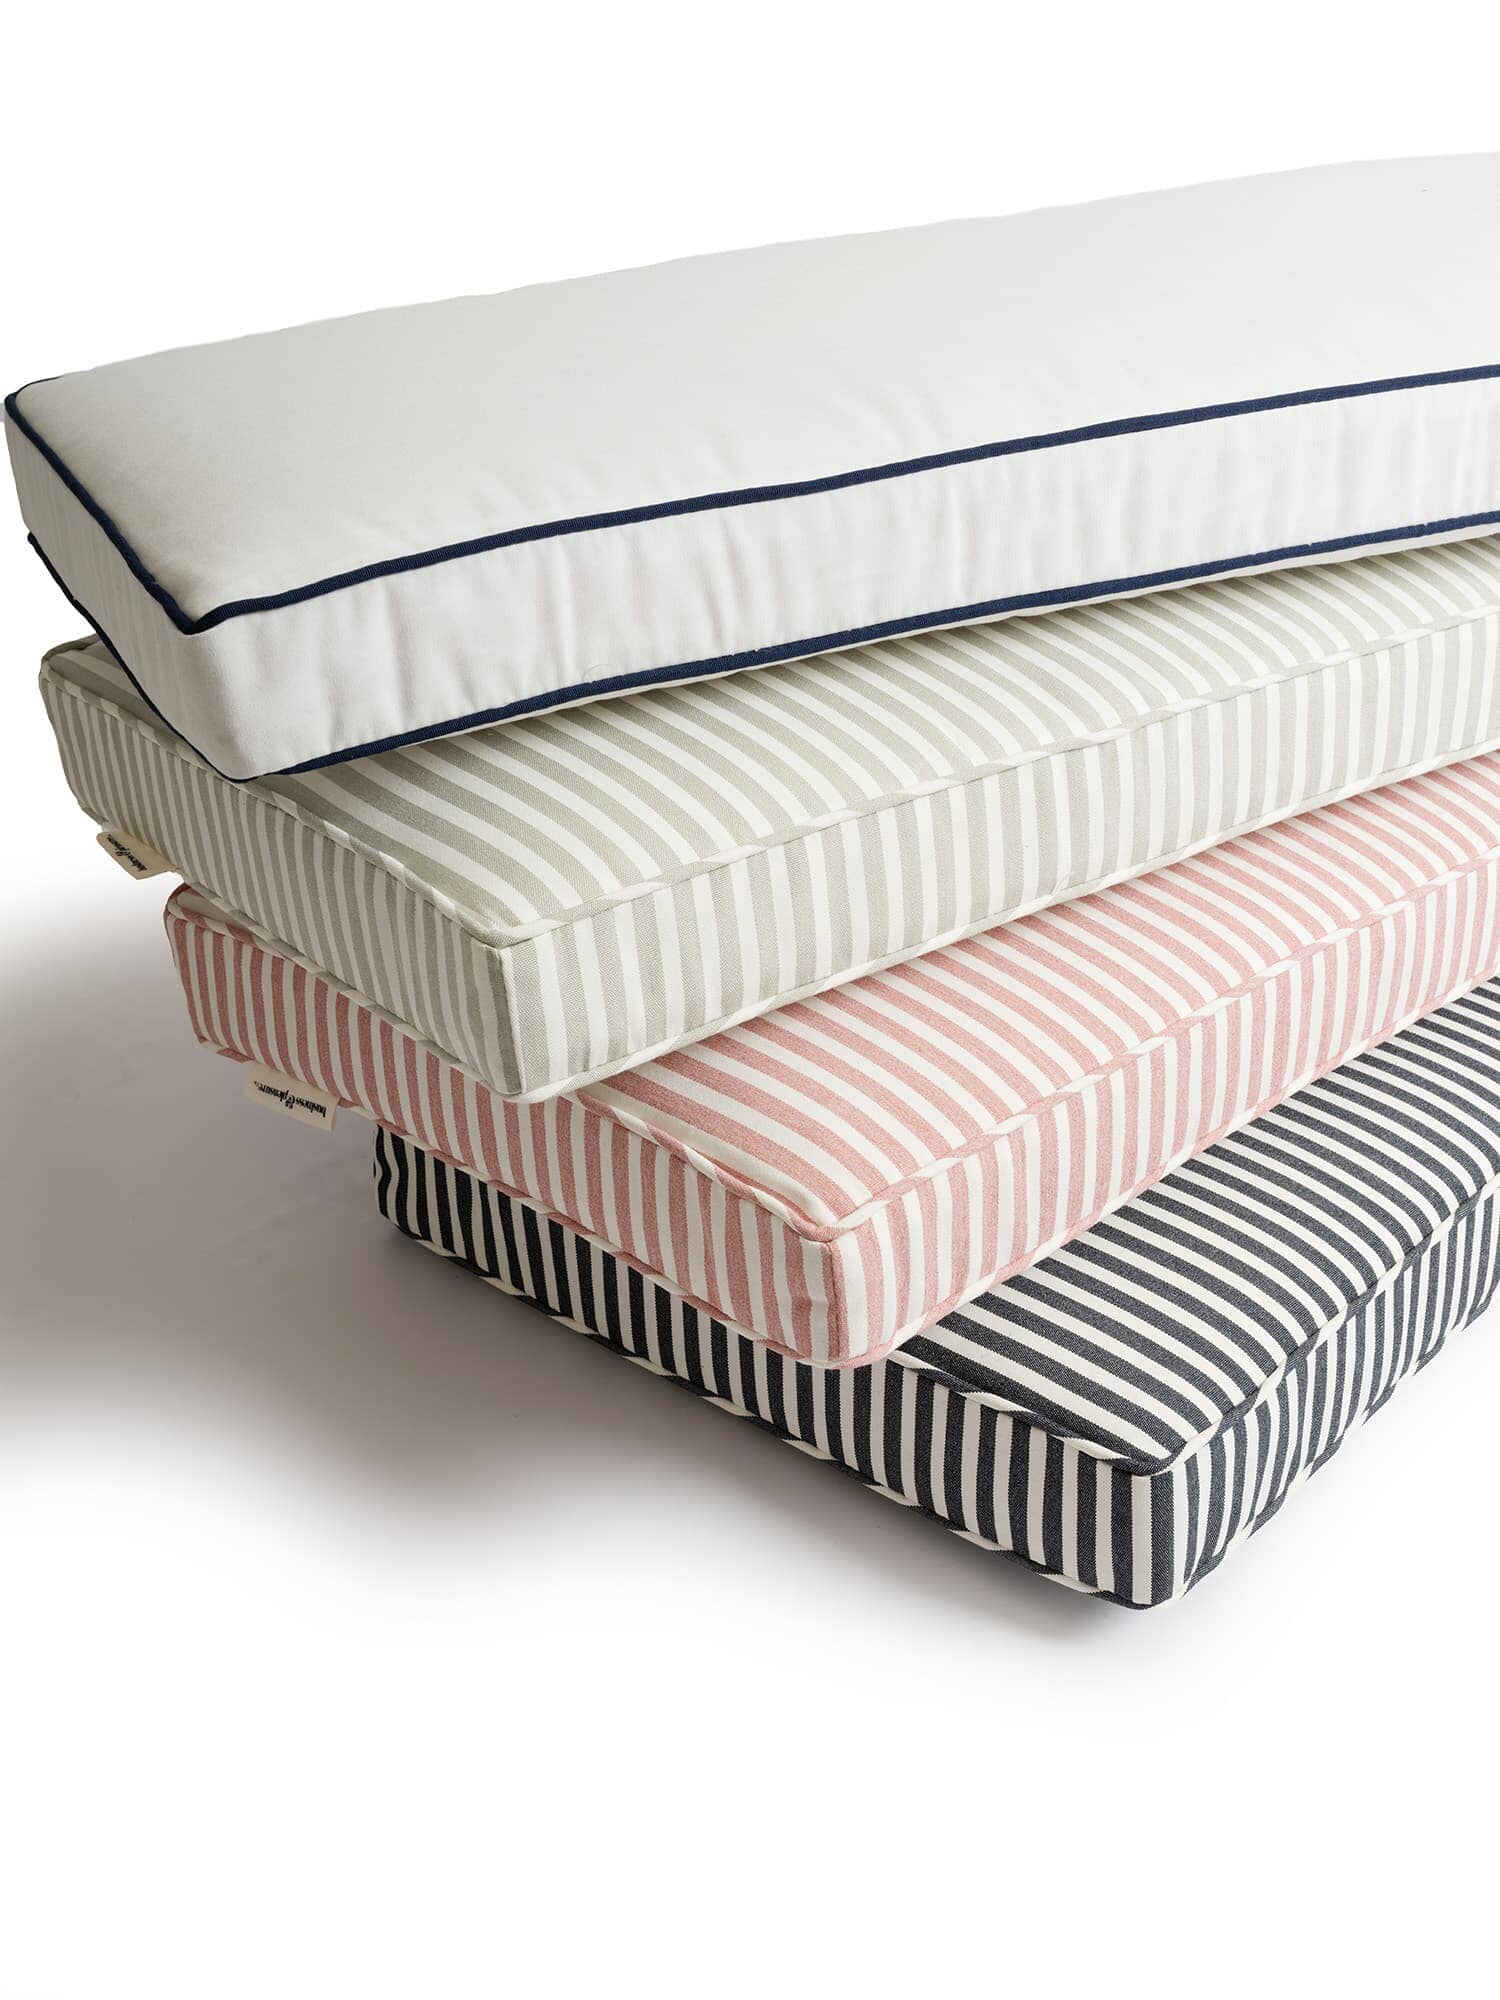 The Bench Pillow - Lauren's Sage Stripe Bench Pillow Business & Pleasure Co 